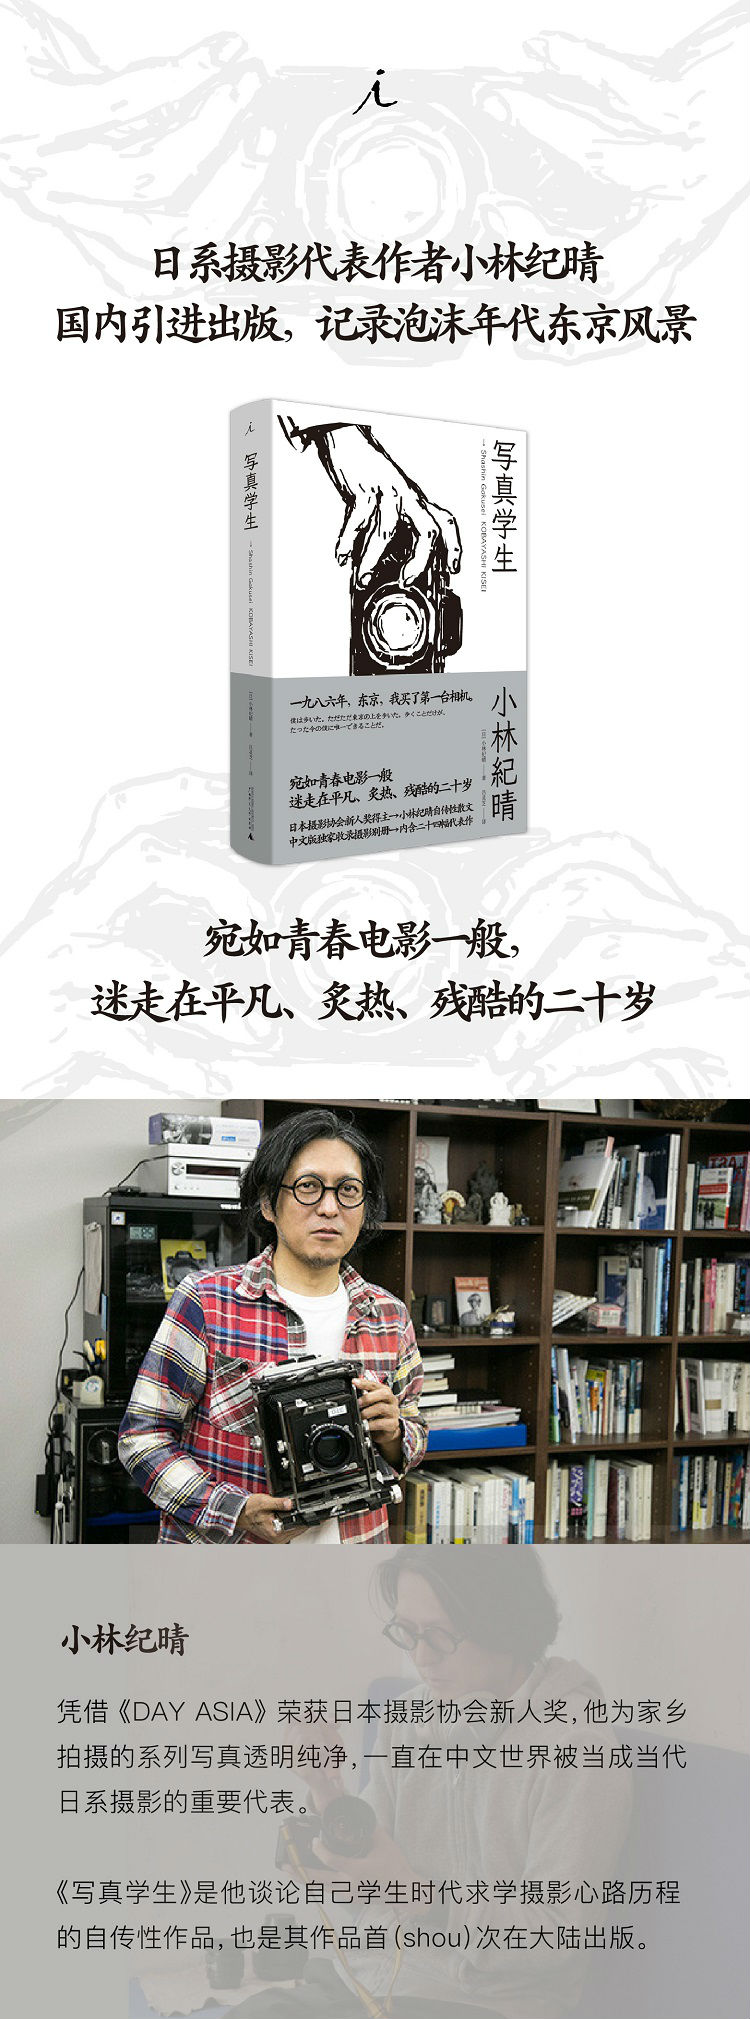 写真学生 日 小林纪晴 摘要书评试读 京东图书